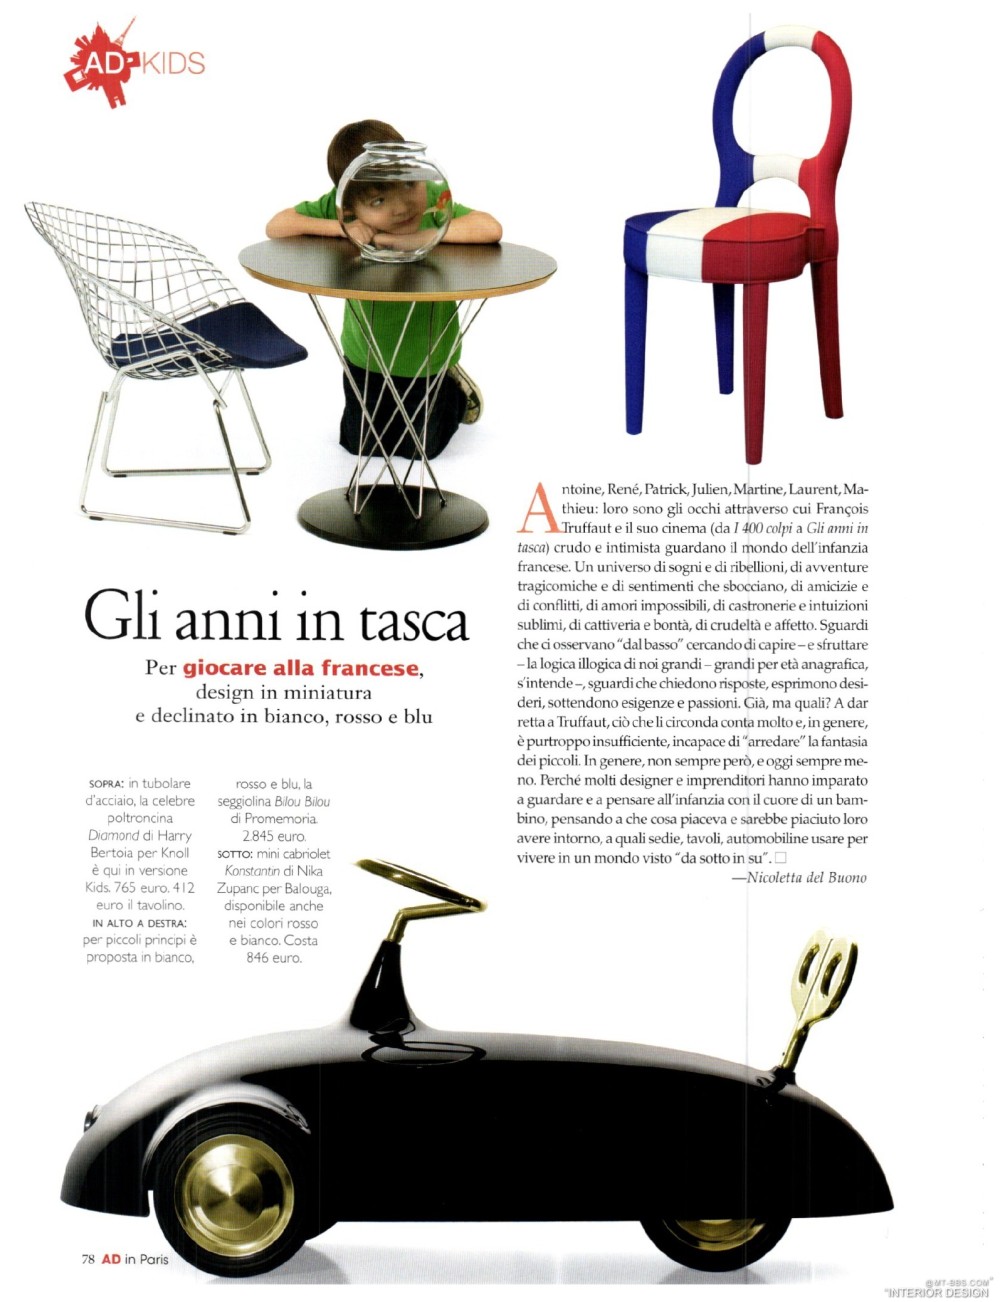 意大利AD 杂志 2012年全年JPG高清版本 全免（上传完毕）_0080.jpg